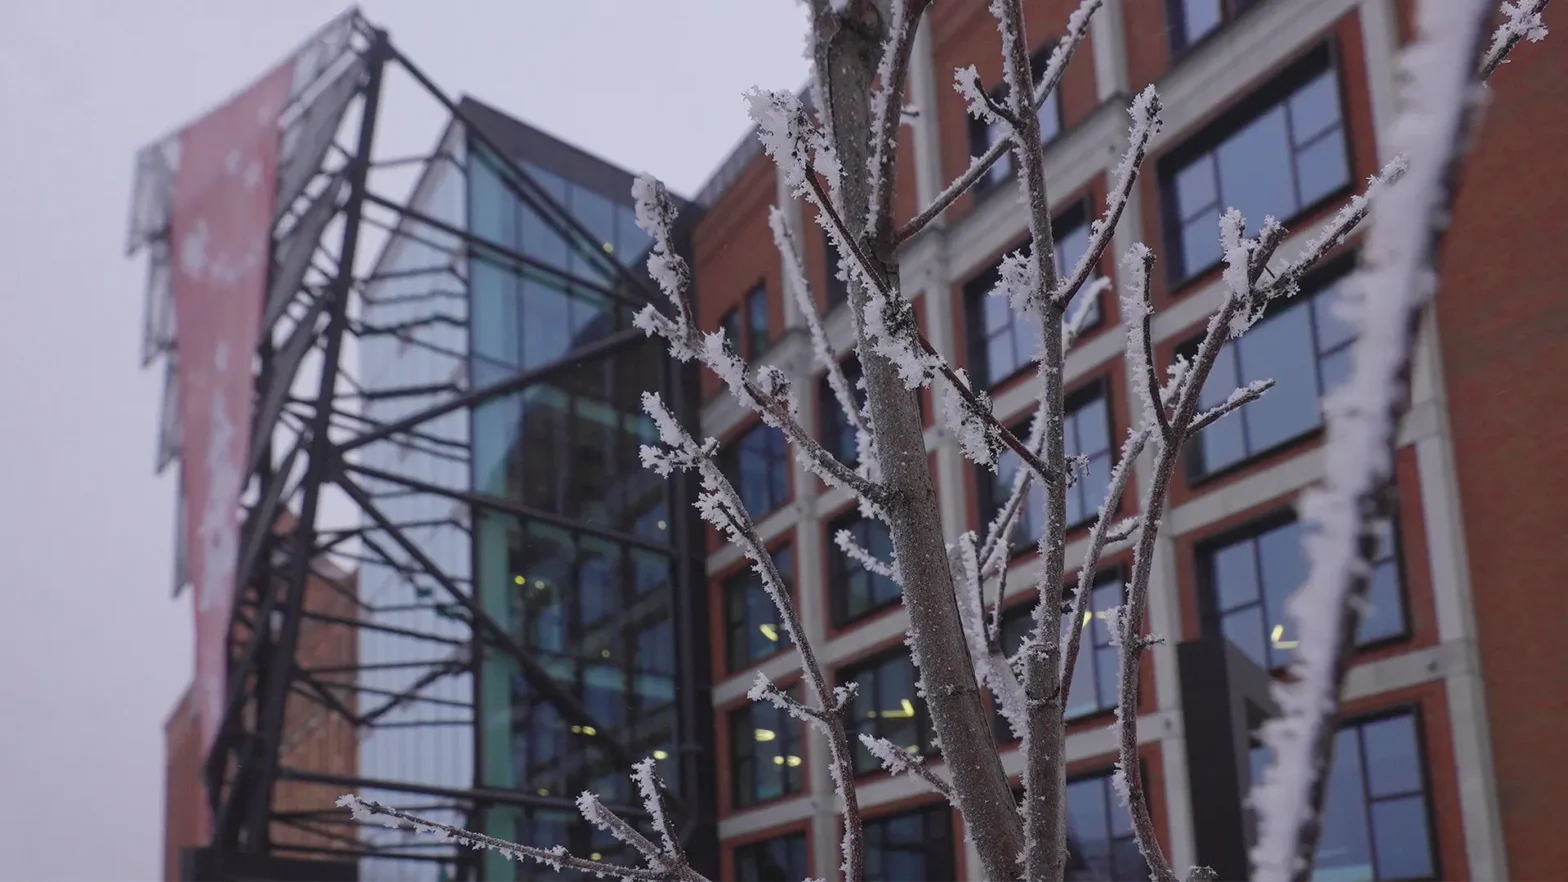 Budynek Wojewódzkiego Ośrodka Animacji Kultury w zimowej scenerii. Przed budynkiem widać łodygi drzewa, oprószone śniegiem.